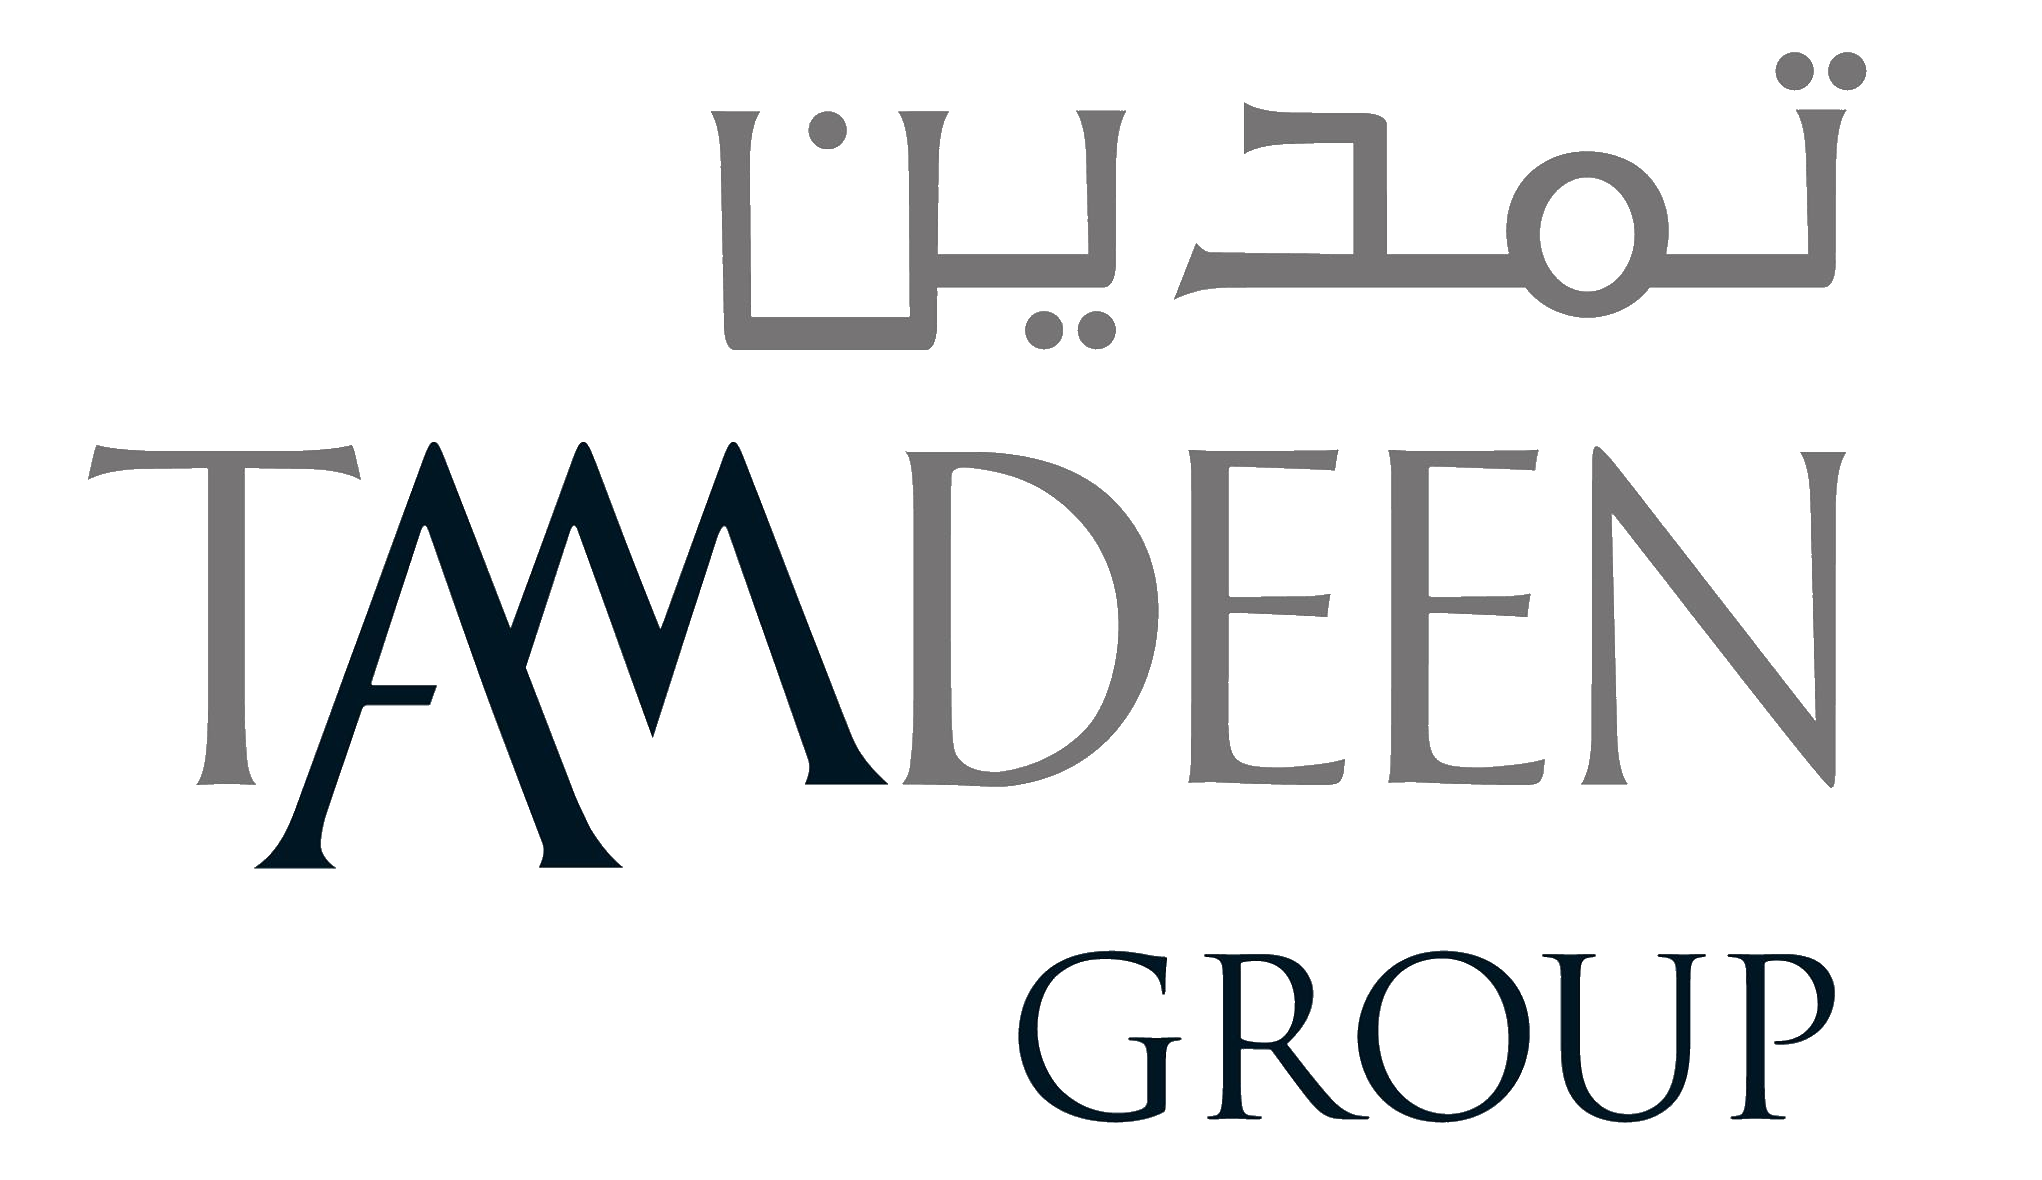 Tamdeen Group